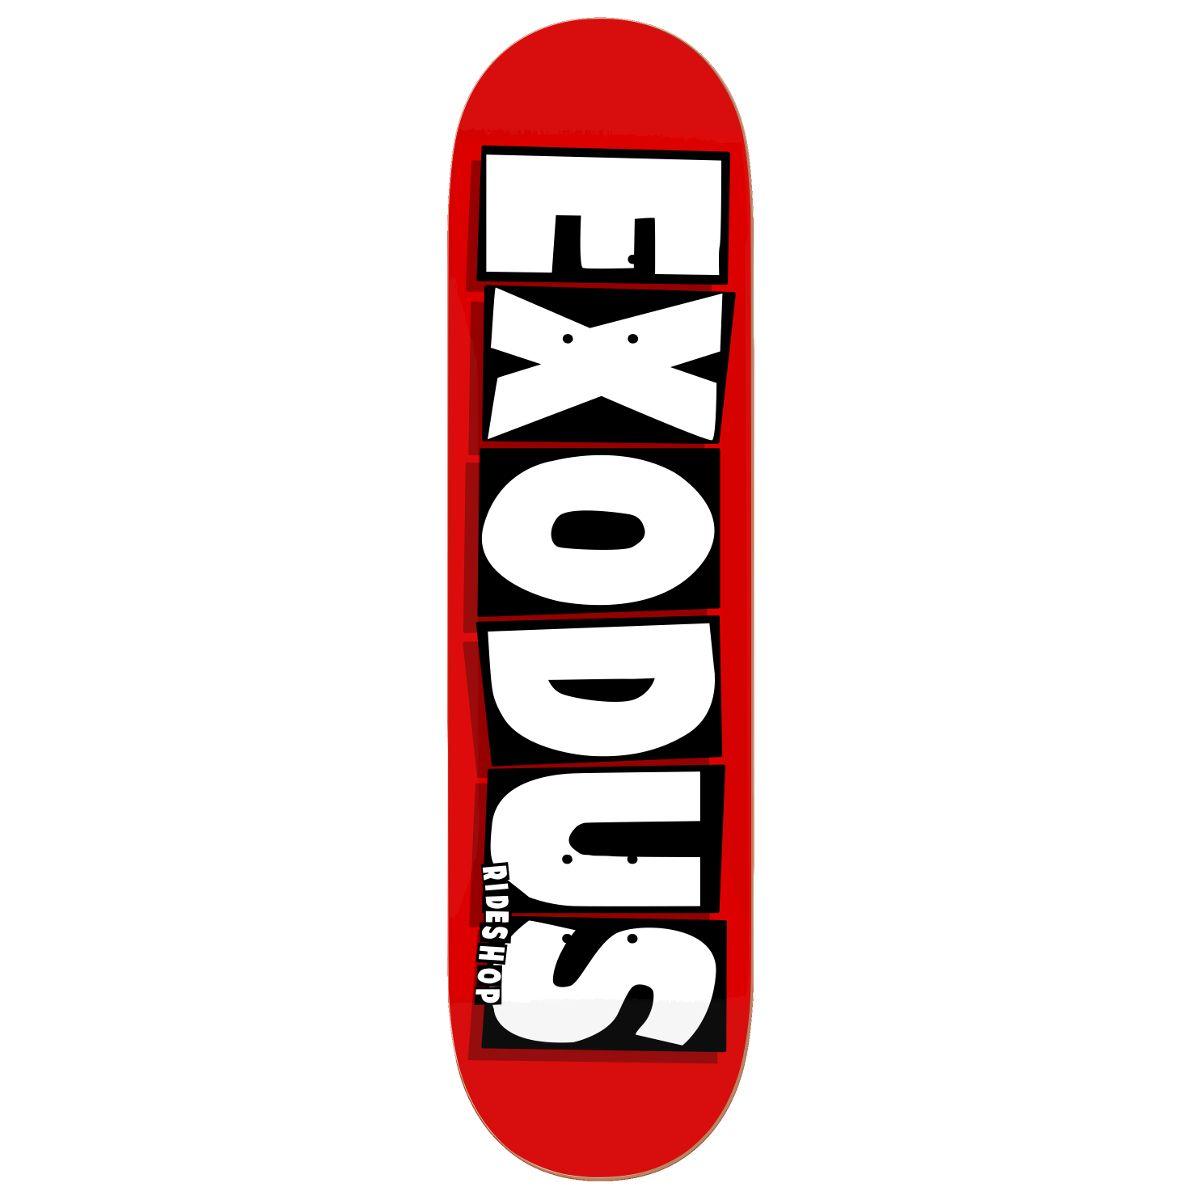 Skateboard Brands Logo - Exodus Brand Logo Full Skateboard Deck - Red/White - Exodus Ride Shop